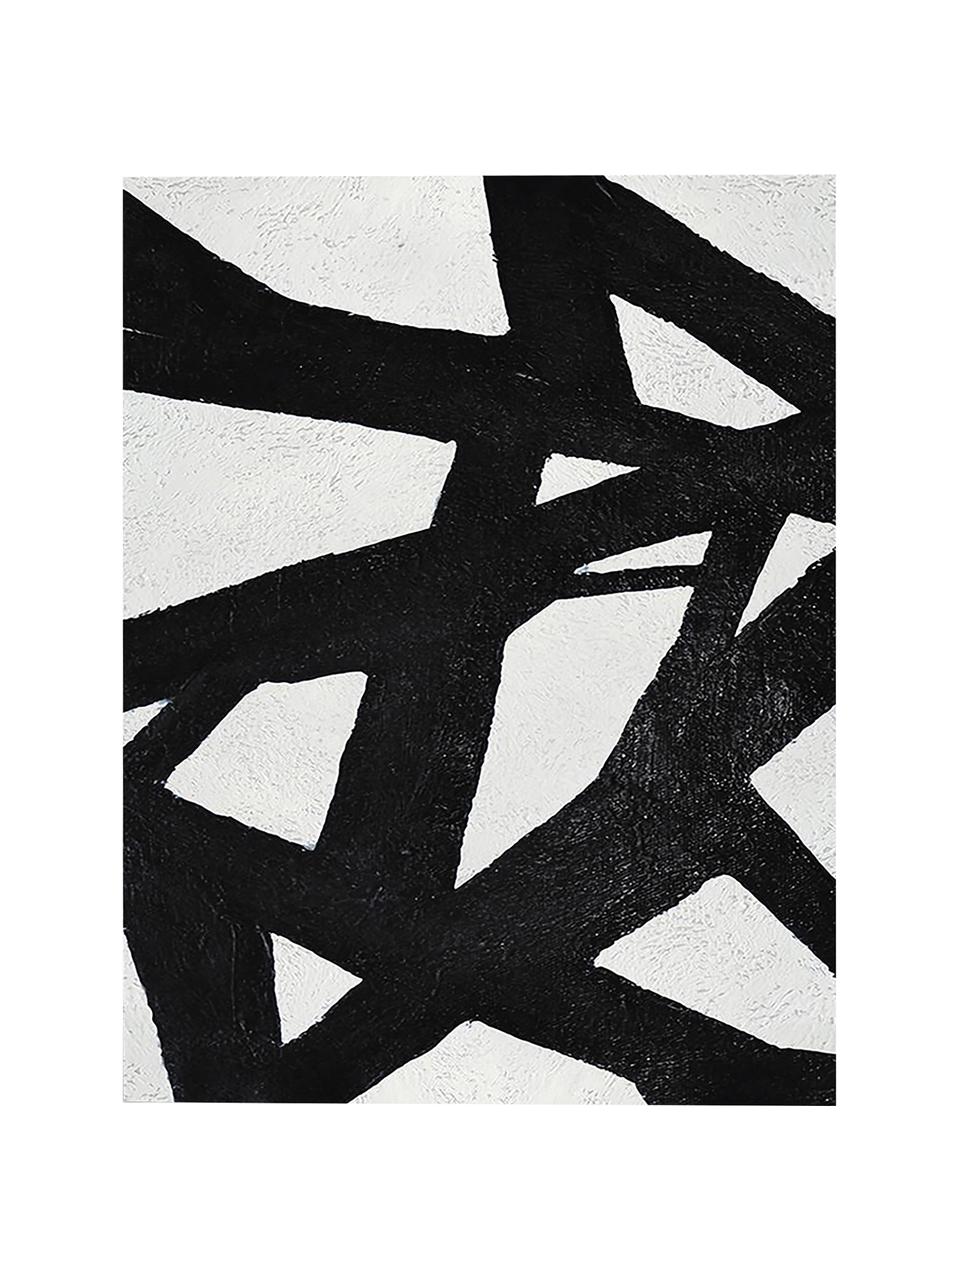 Leinwanddruck Roads, Bild: Digitaldruck auf Leinen, Schwarz, Weiß, 60 x 80 cm